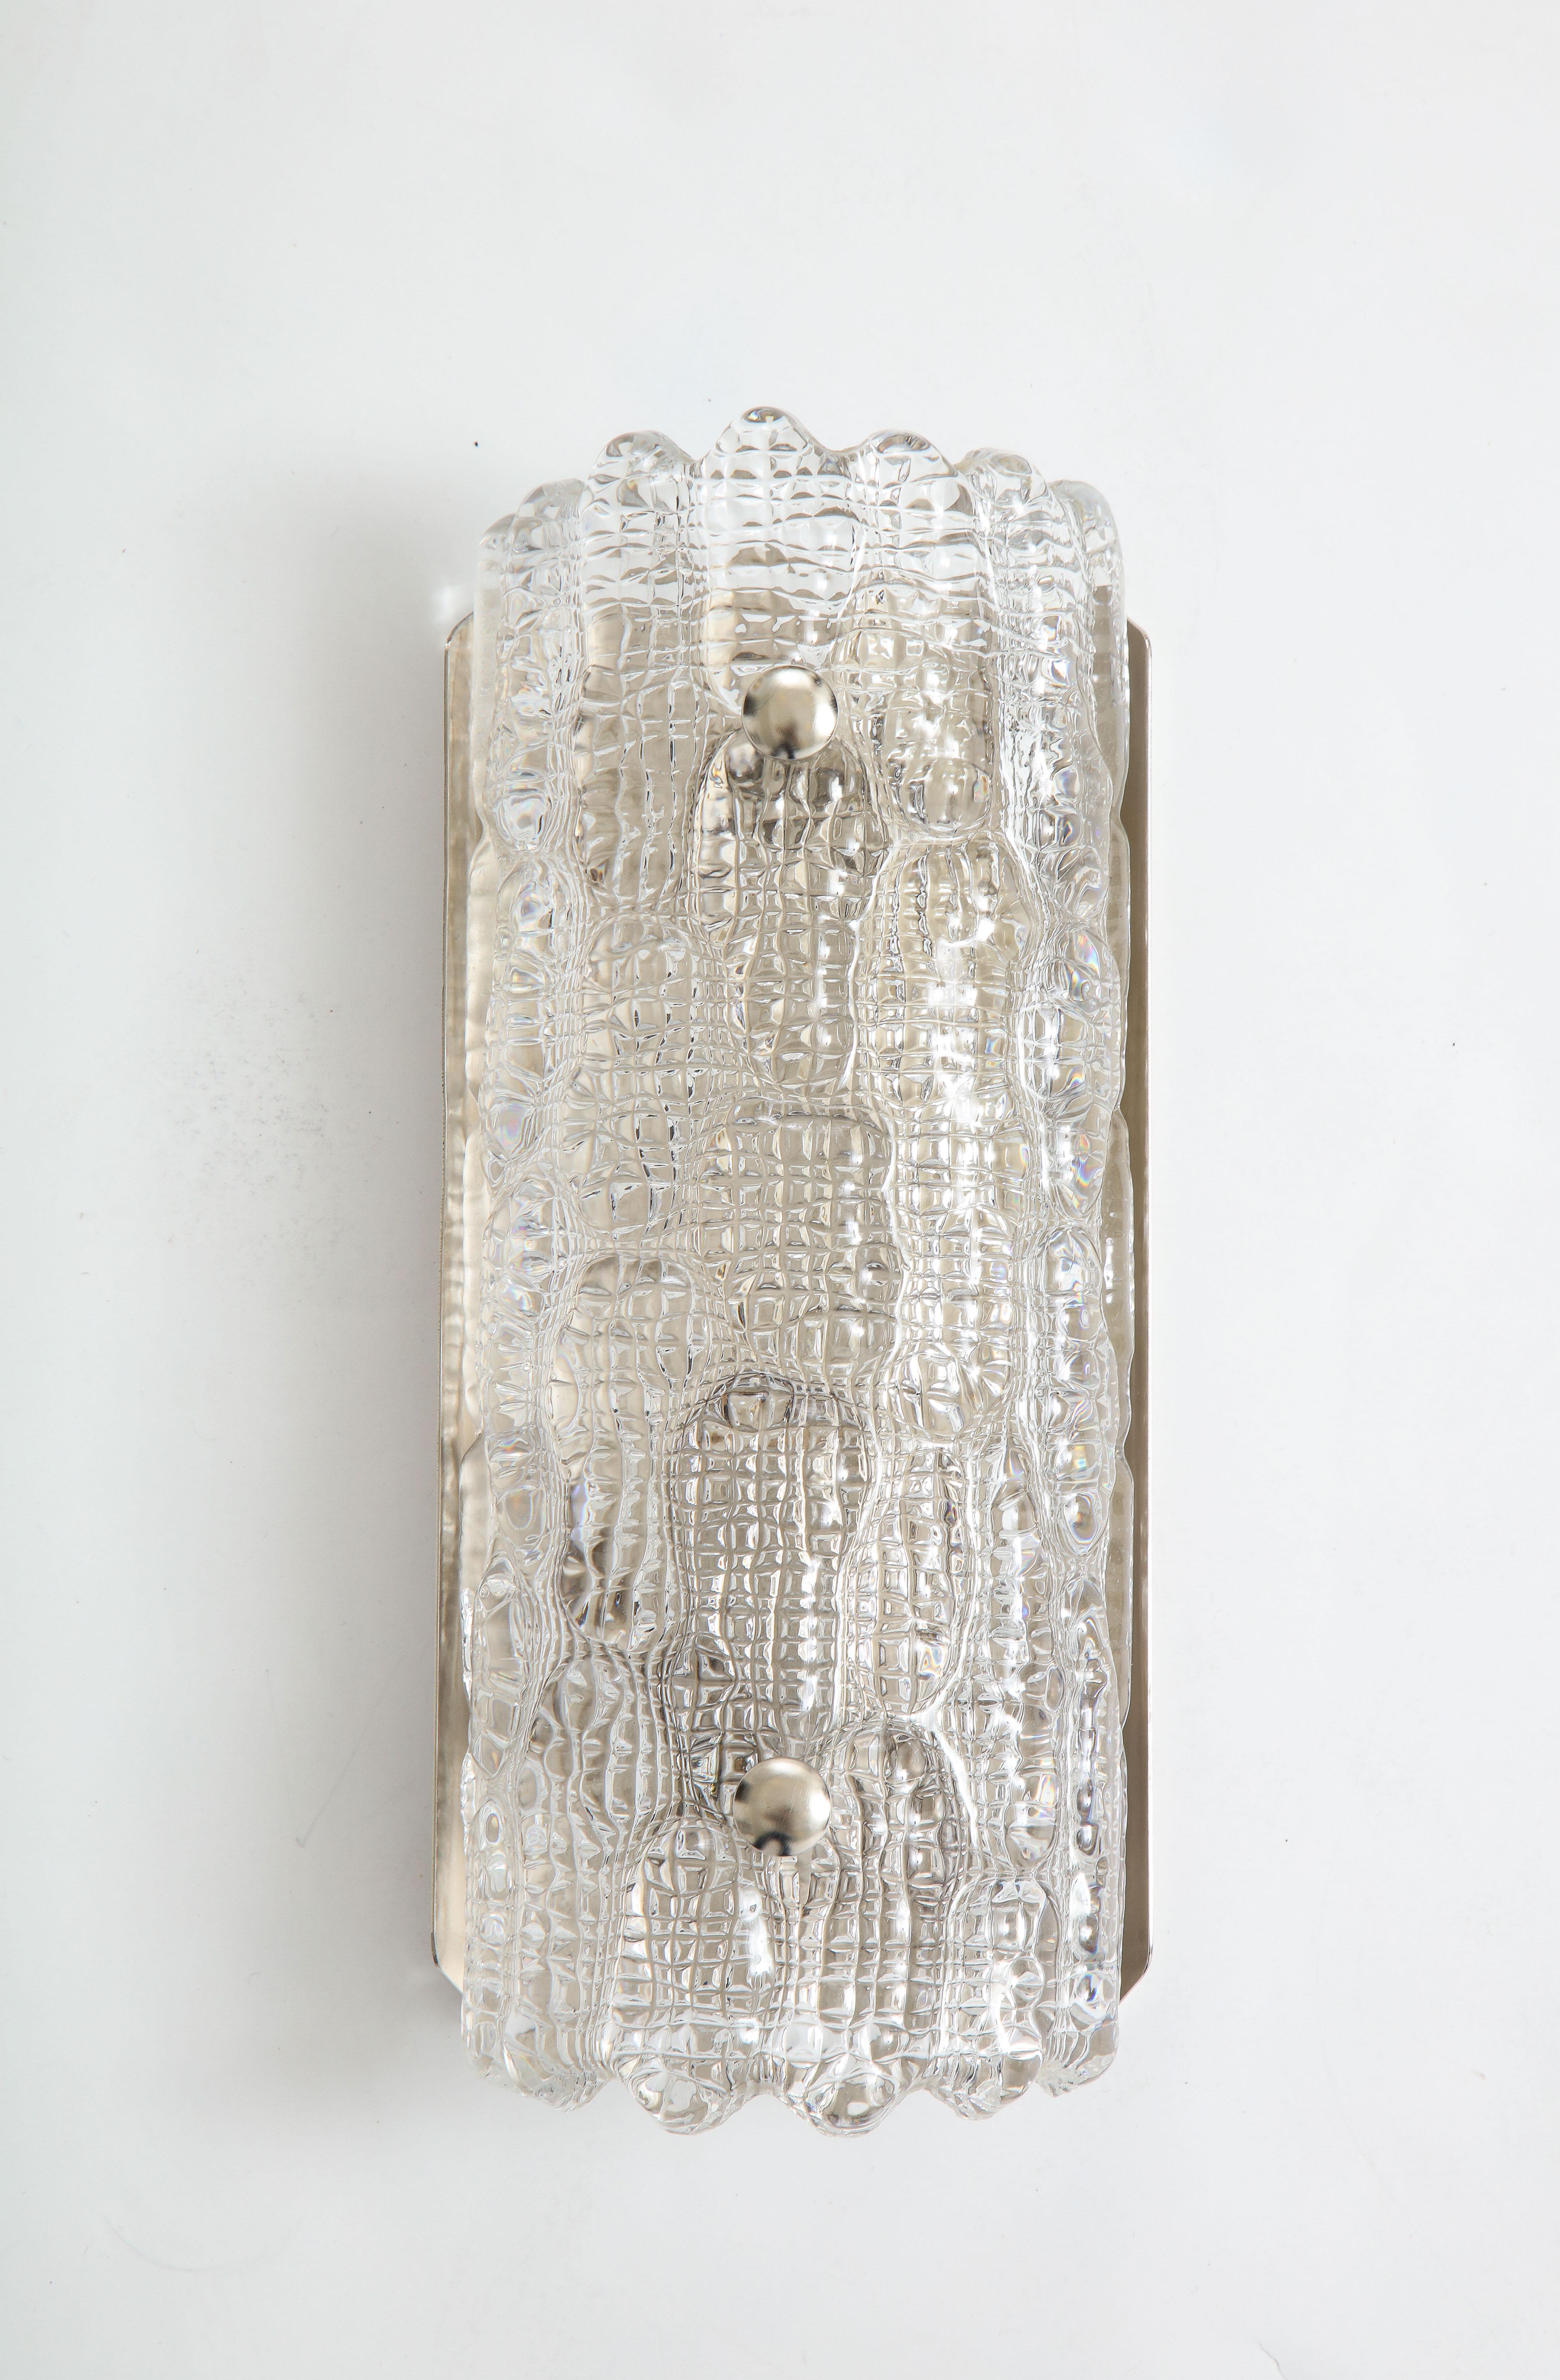 Scandinavian Modern Orrefors Croco Embossed Crystal / Nickel Sconces, 1 of 3 Pairs For Sale